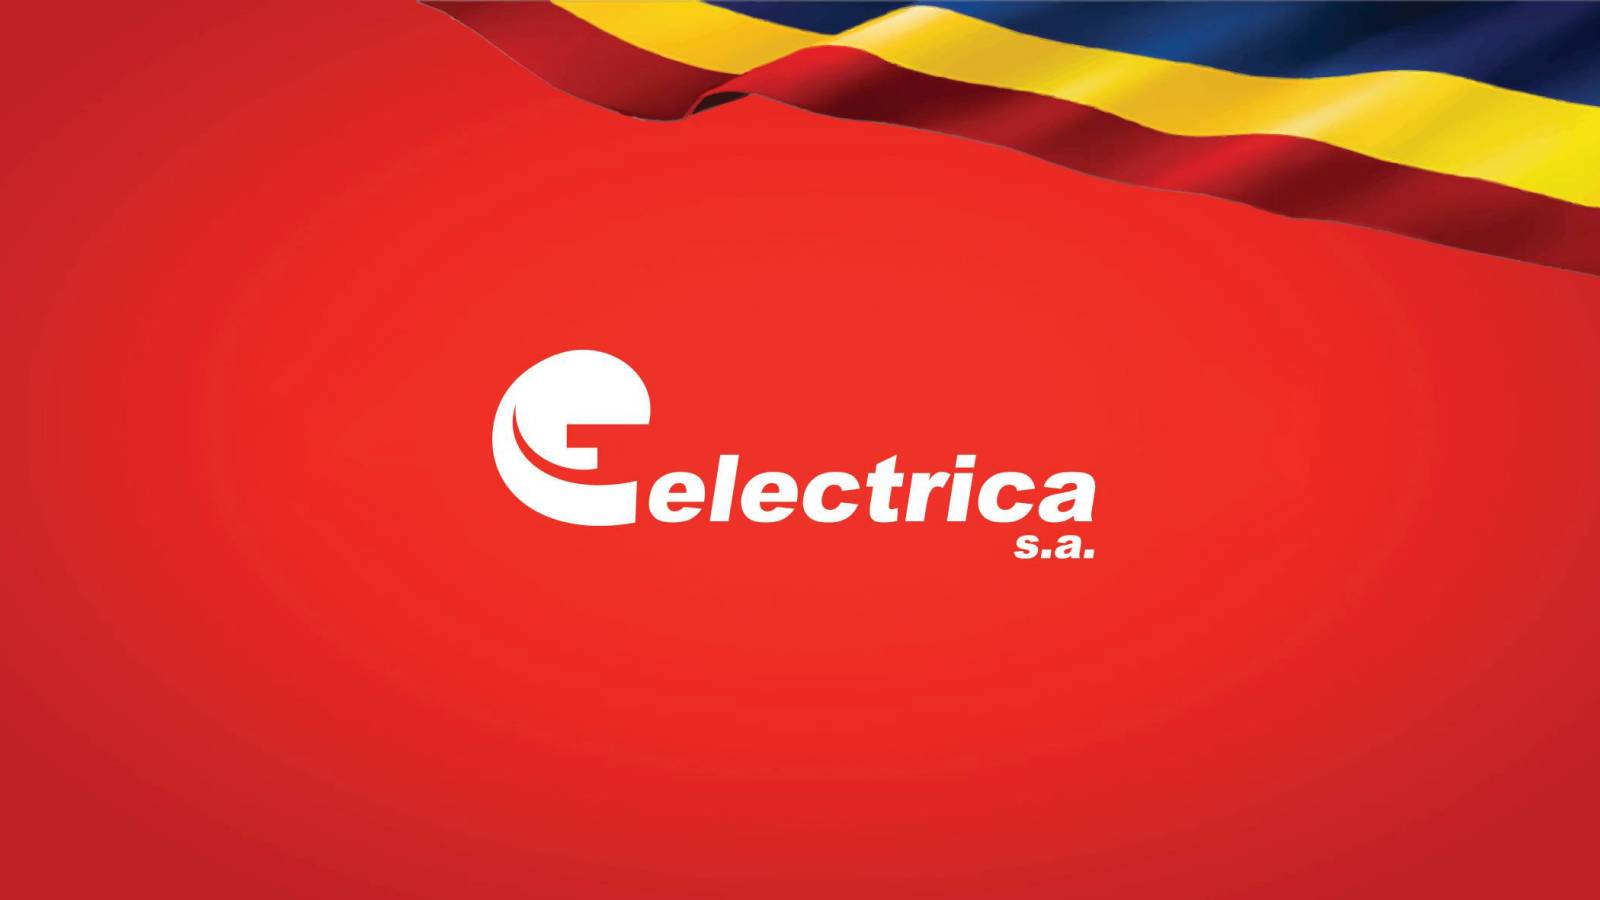 Officiel ELECTRICA-meddelelse SIDSTE ØJEBLIK OBS Rumænere Over hele landet